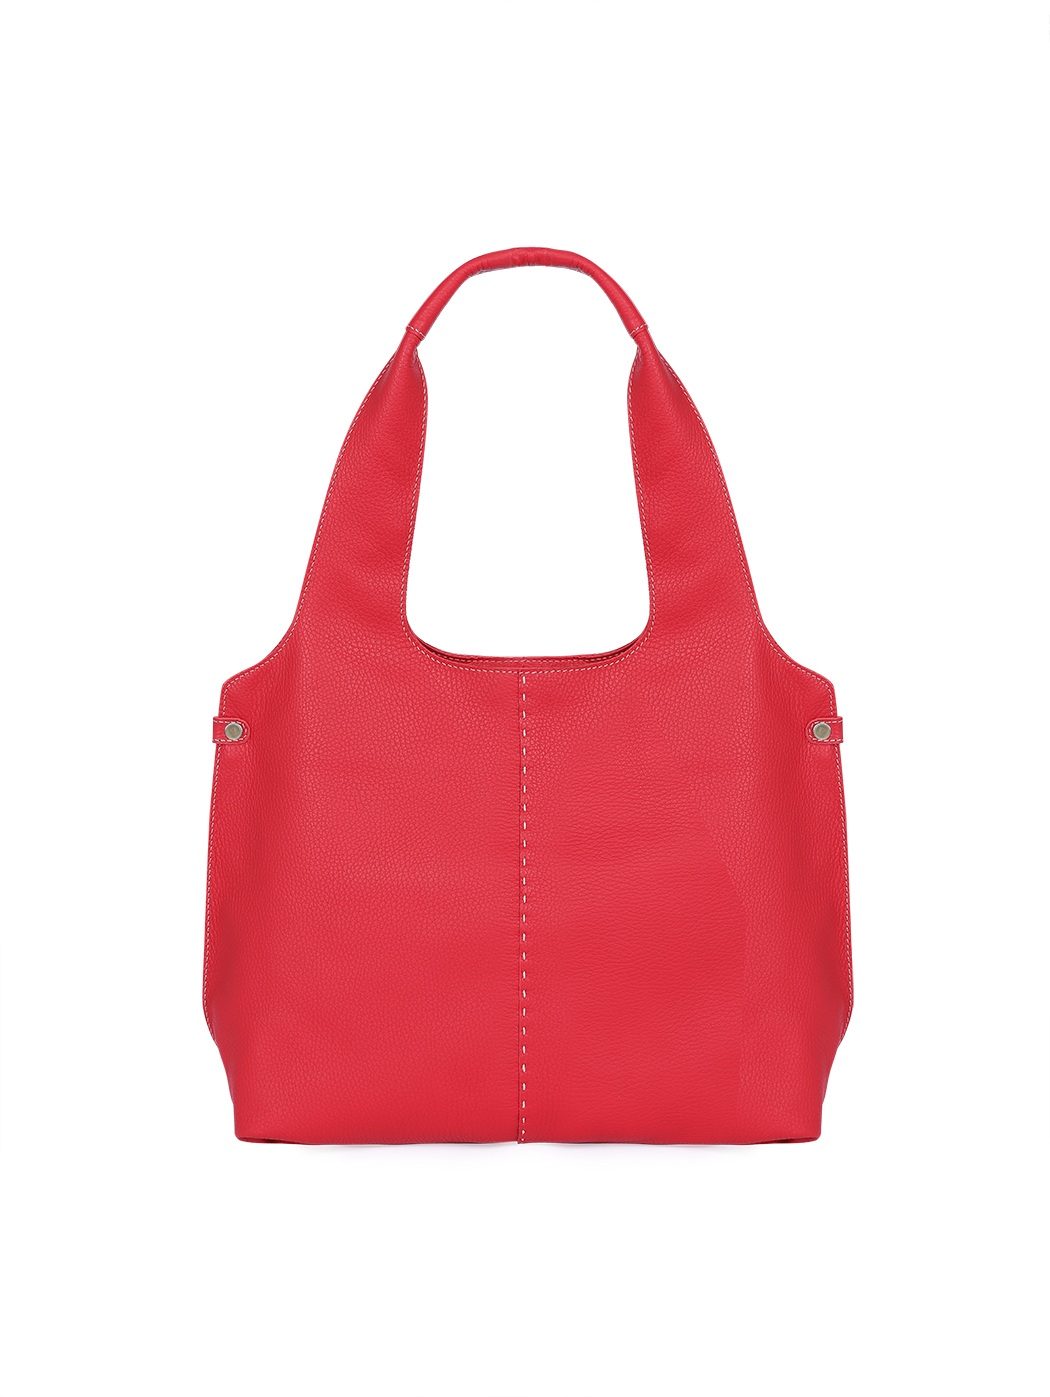 Large Tote Shoulder Deerskin Leather Bag Red